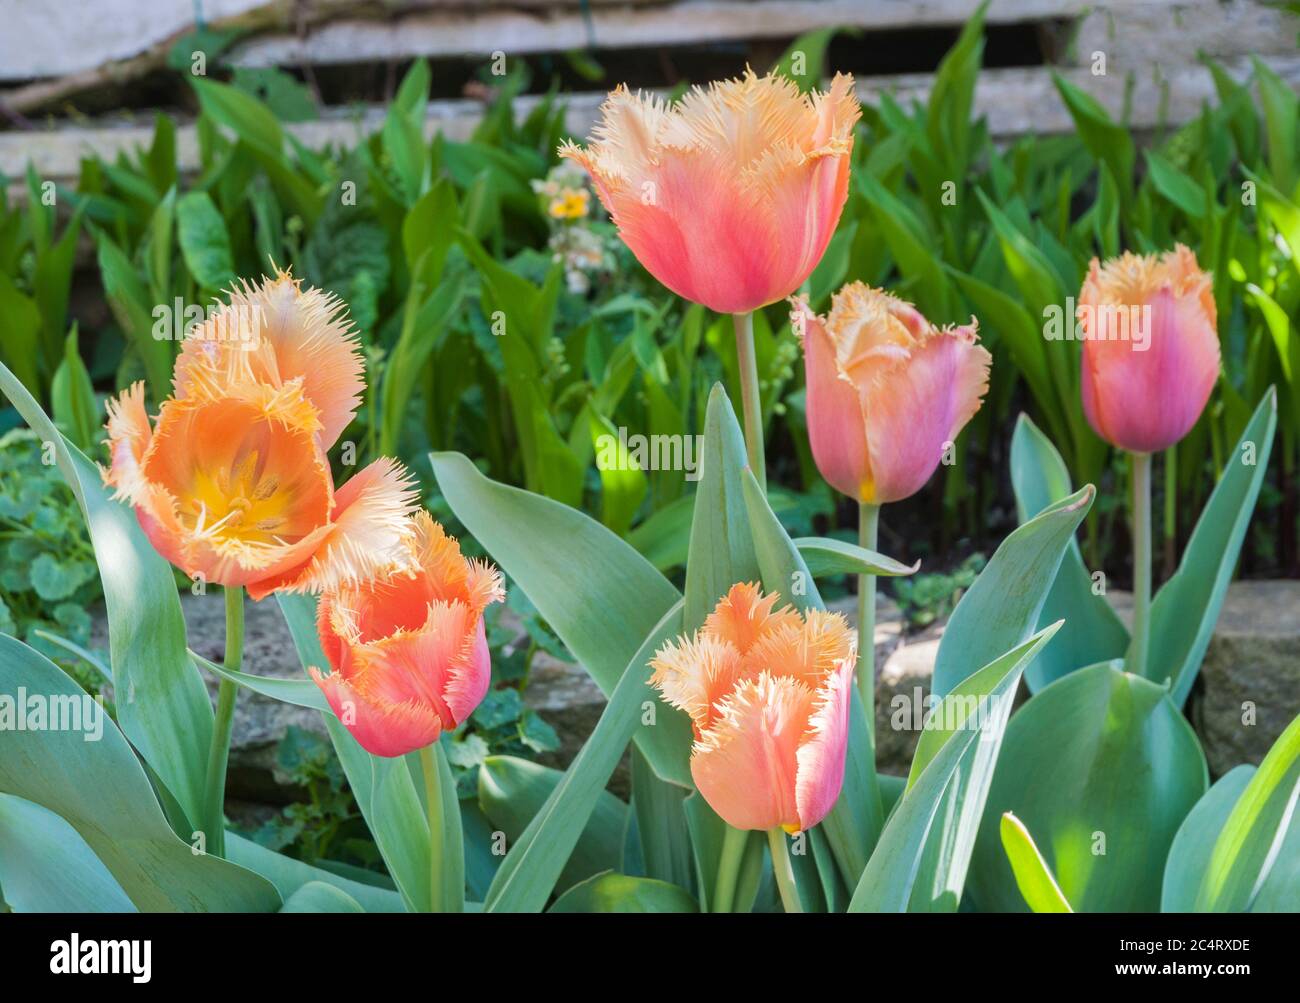 Gruppo di tulipa frangiate. Un tulipano arancione con una sola frange da metà a tarda primavera appartenente al gruppo crisspa con frange della Divisione 7 tulipani Foto Stock